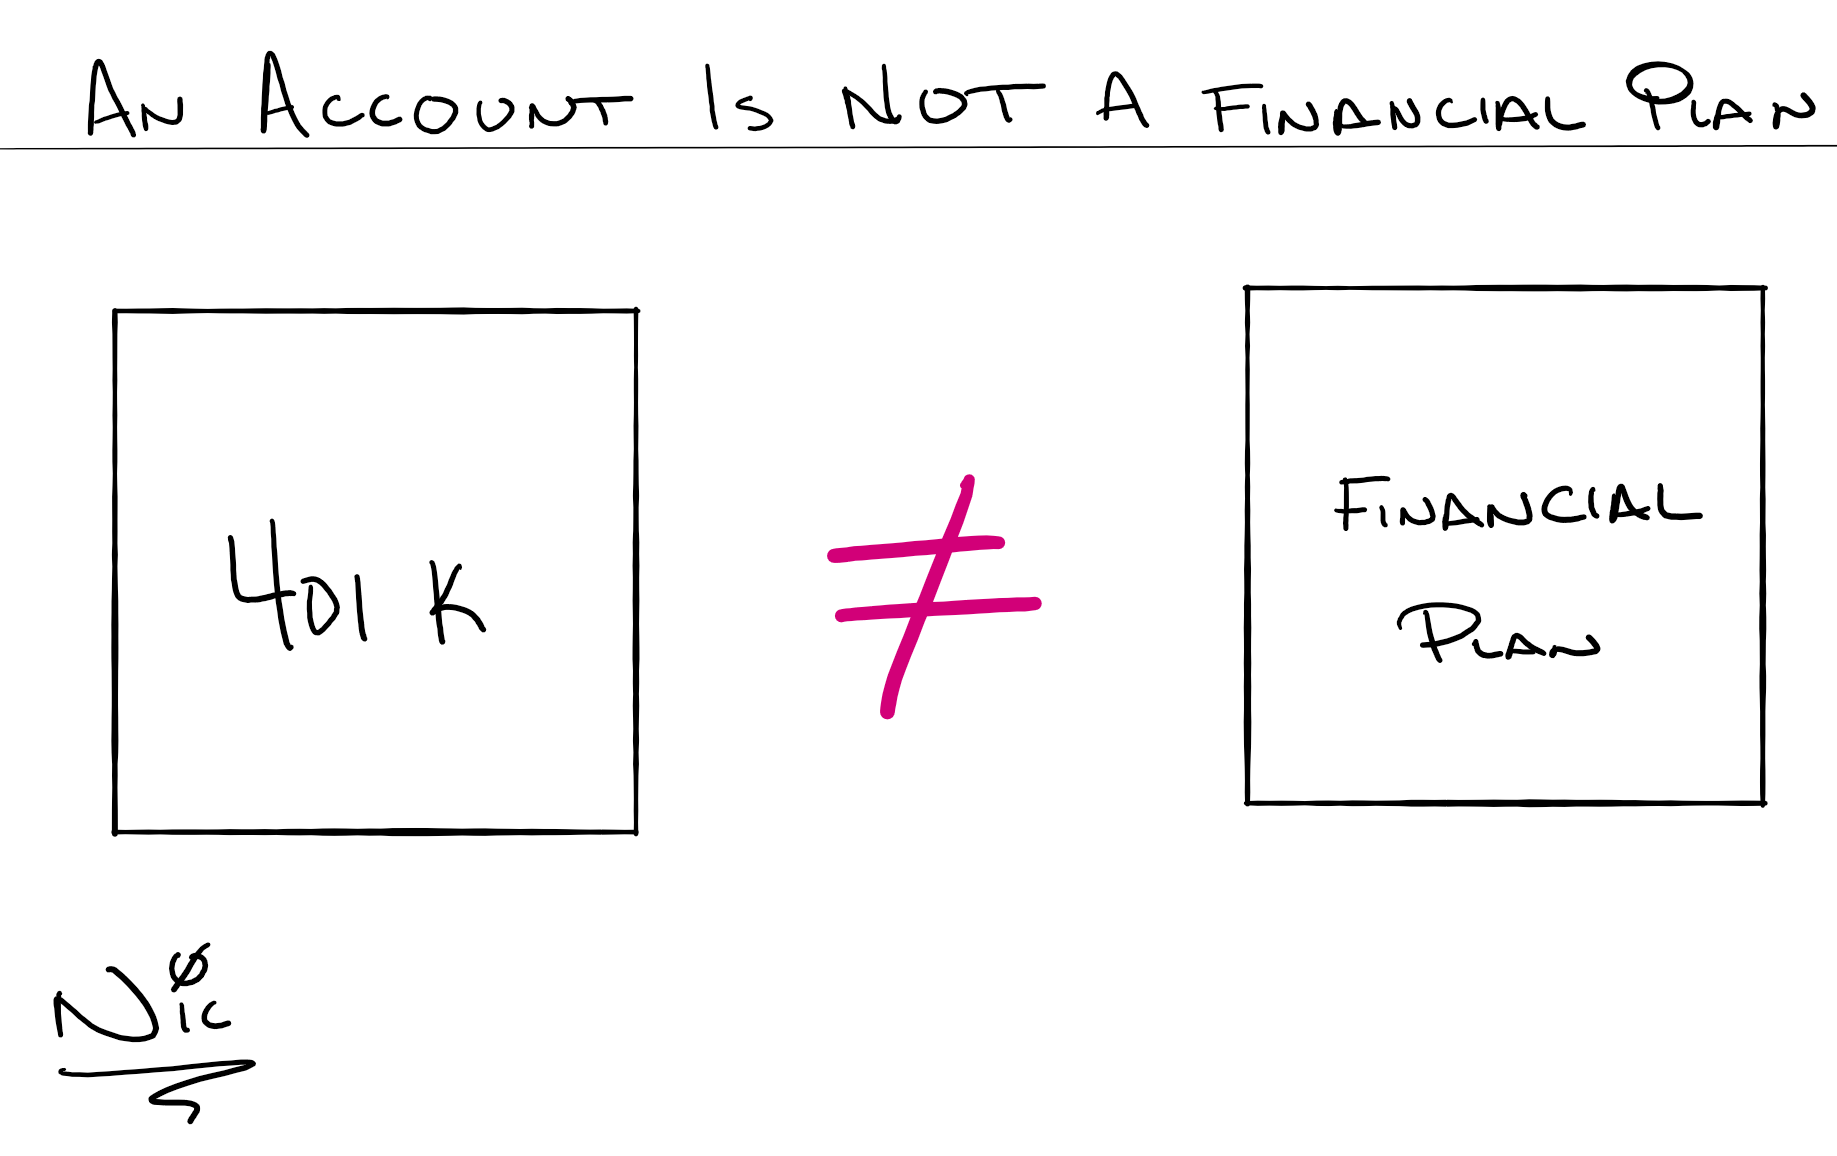 not a financial plan